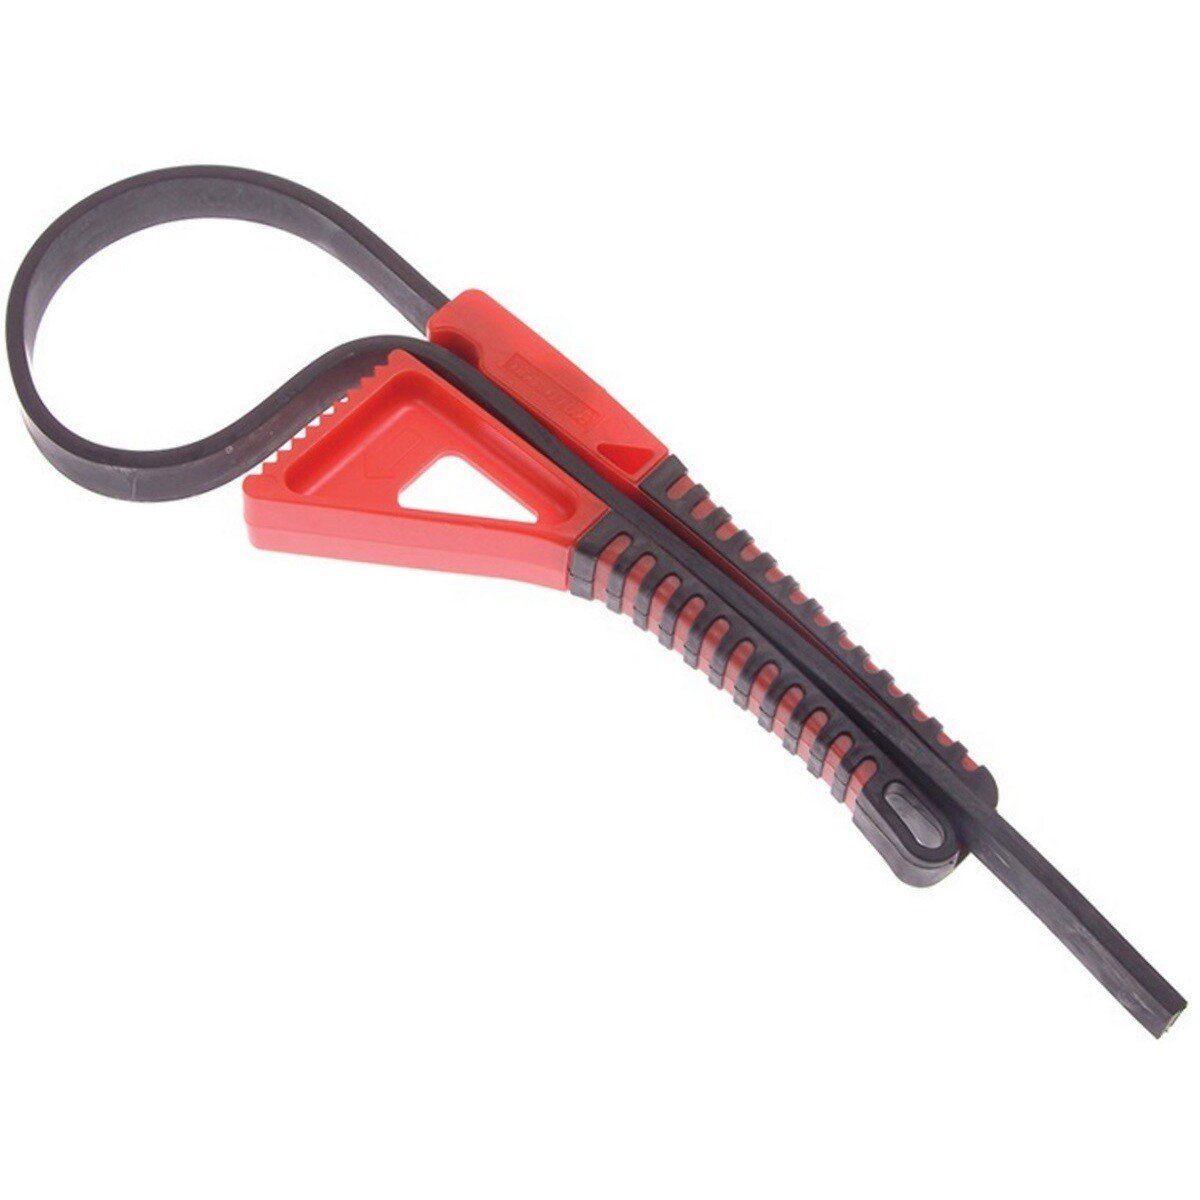 Boa BOASTDSG Boa Constrictor Strap Wrench Soft Grip